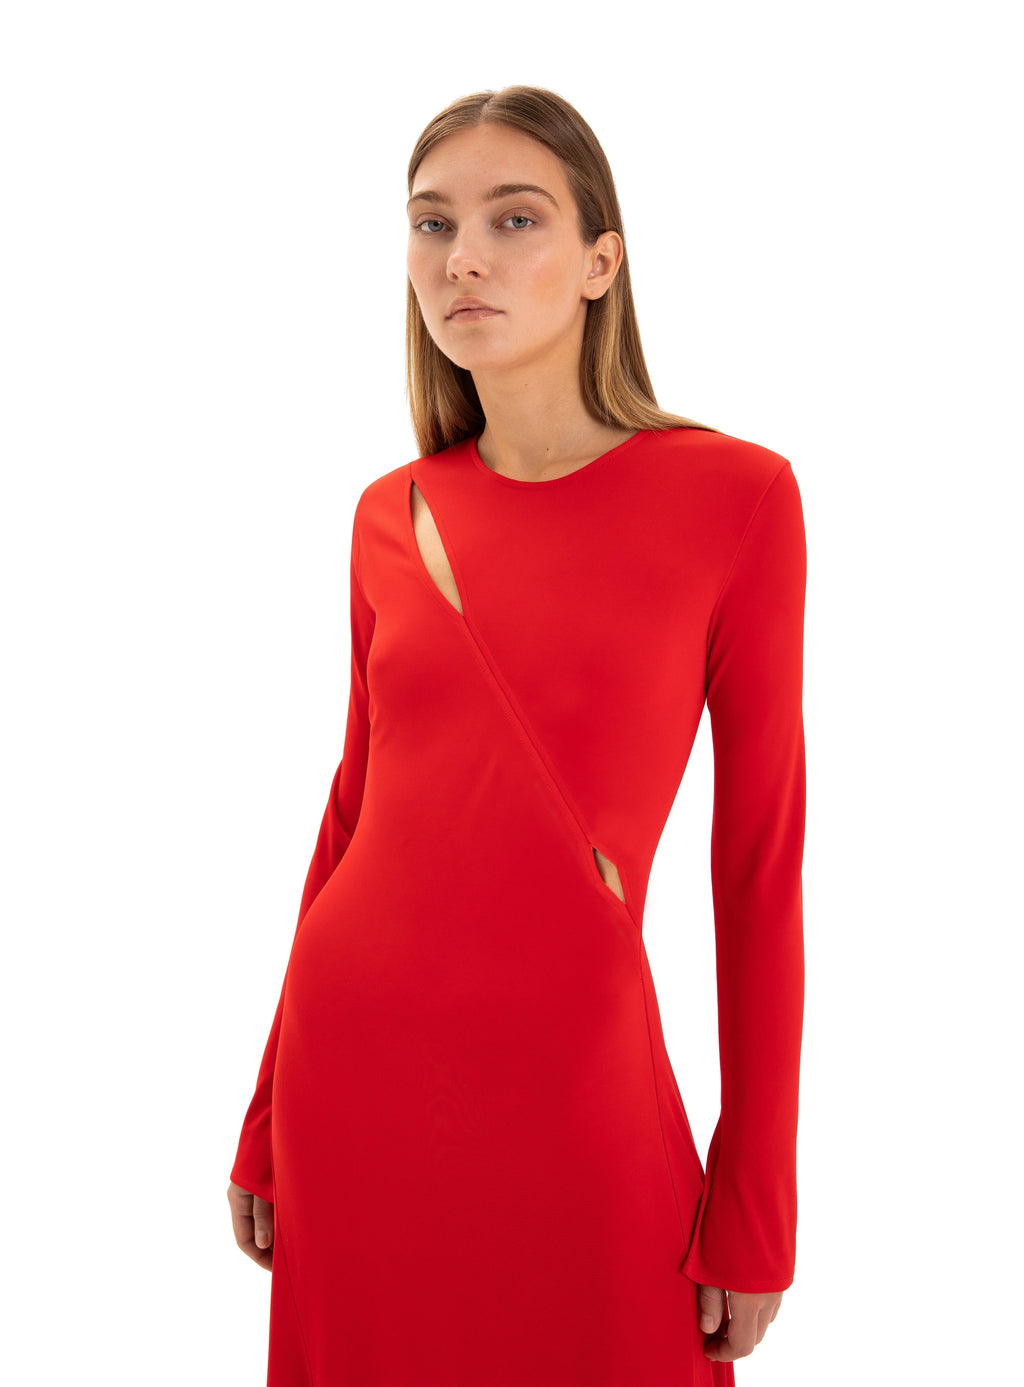 WINONA RED STRETCH DRESS